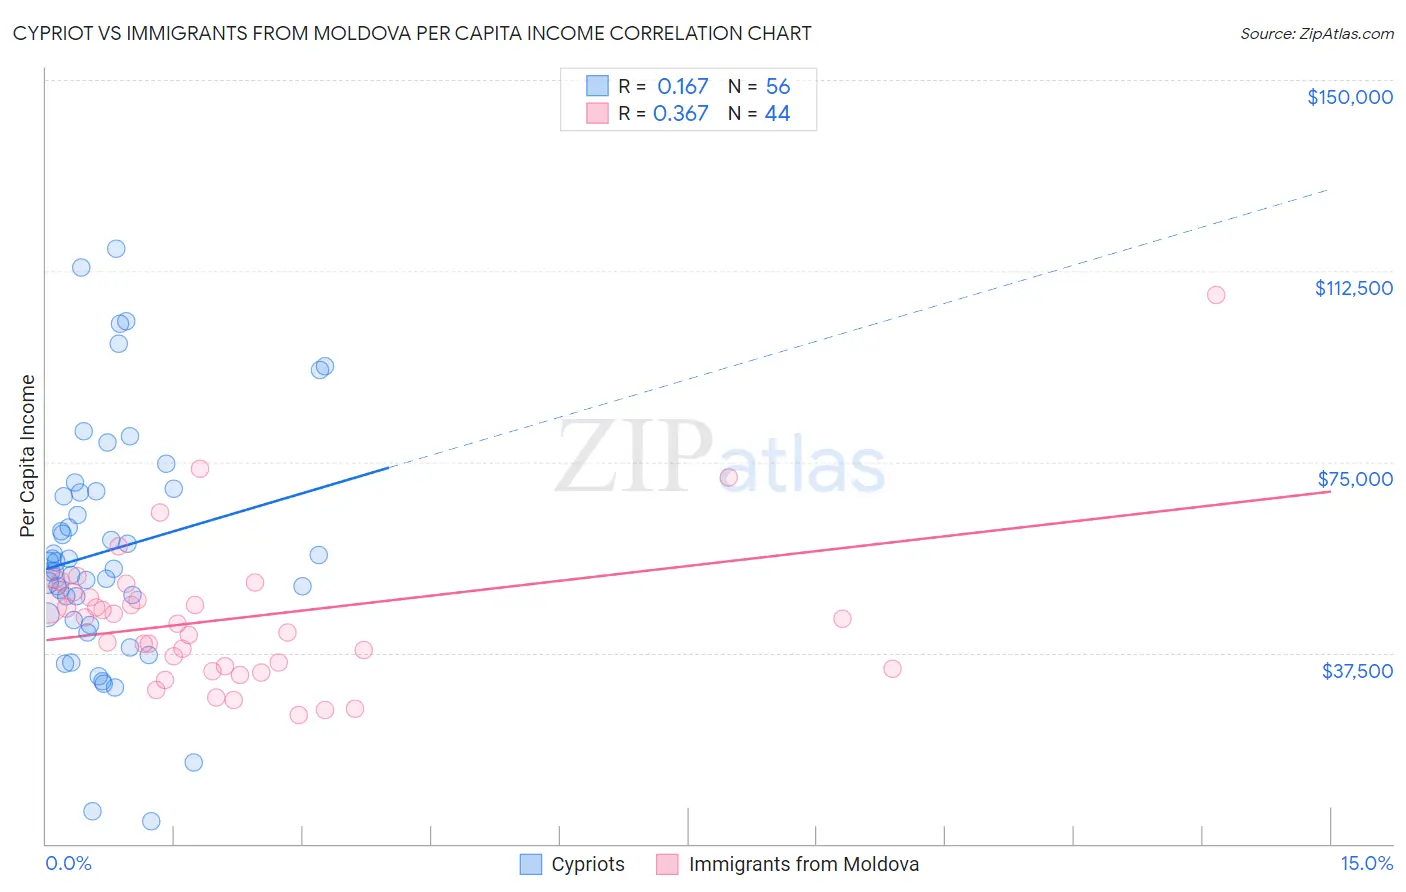 Cypriot vs Immigrants from Moldova Per Capita Income